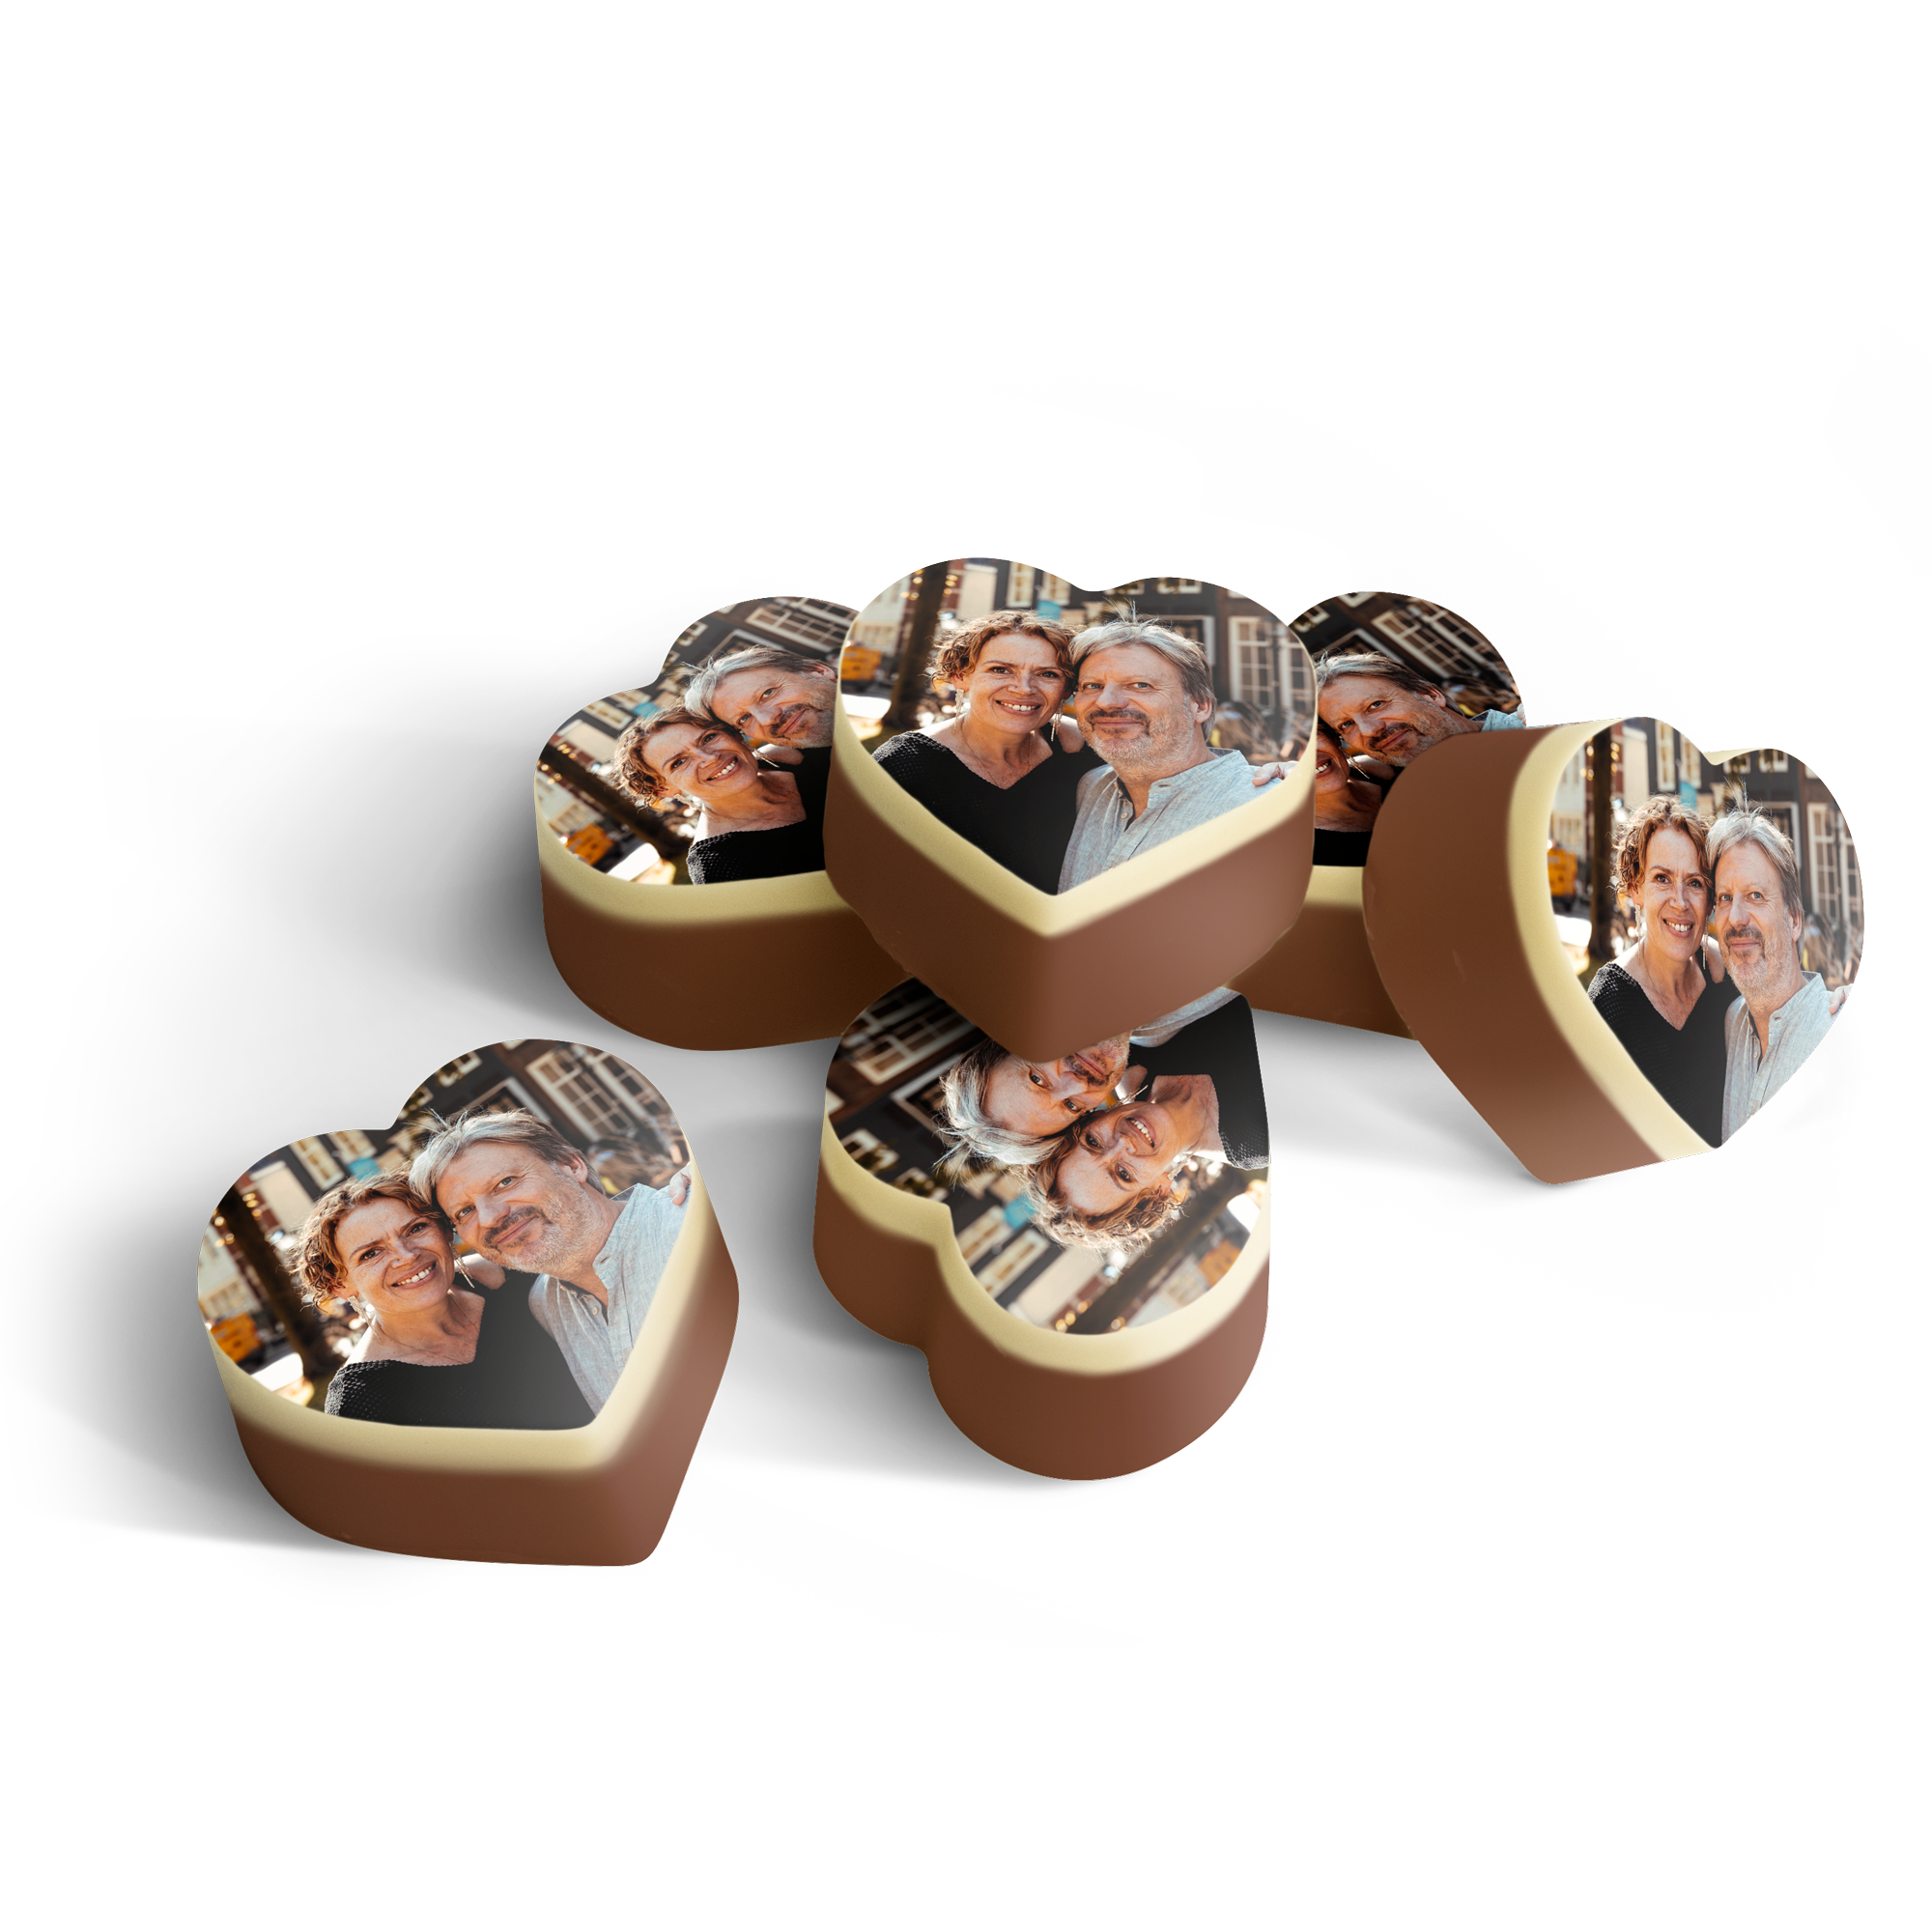 Cioccolatini Personalizzati - Cuore